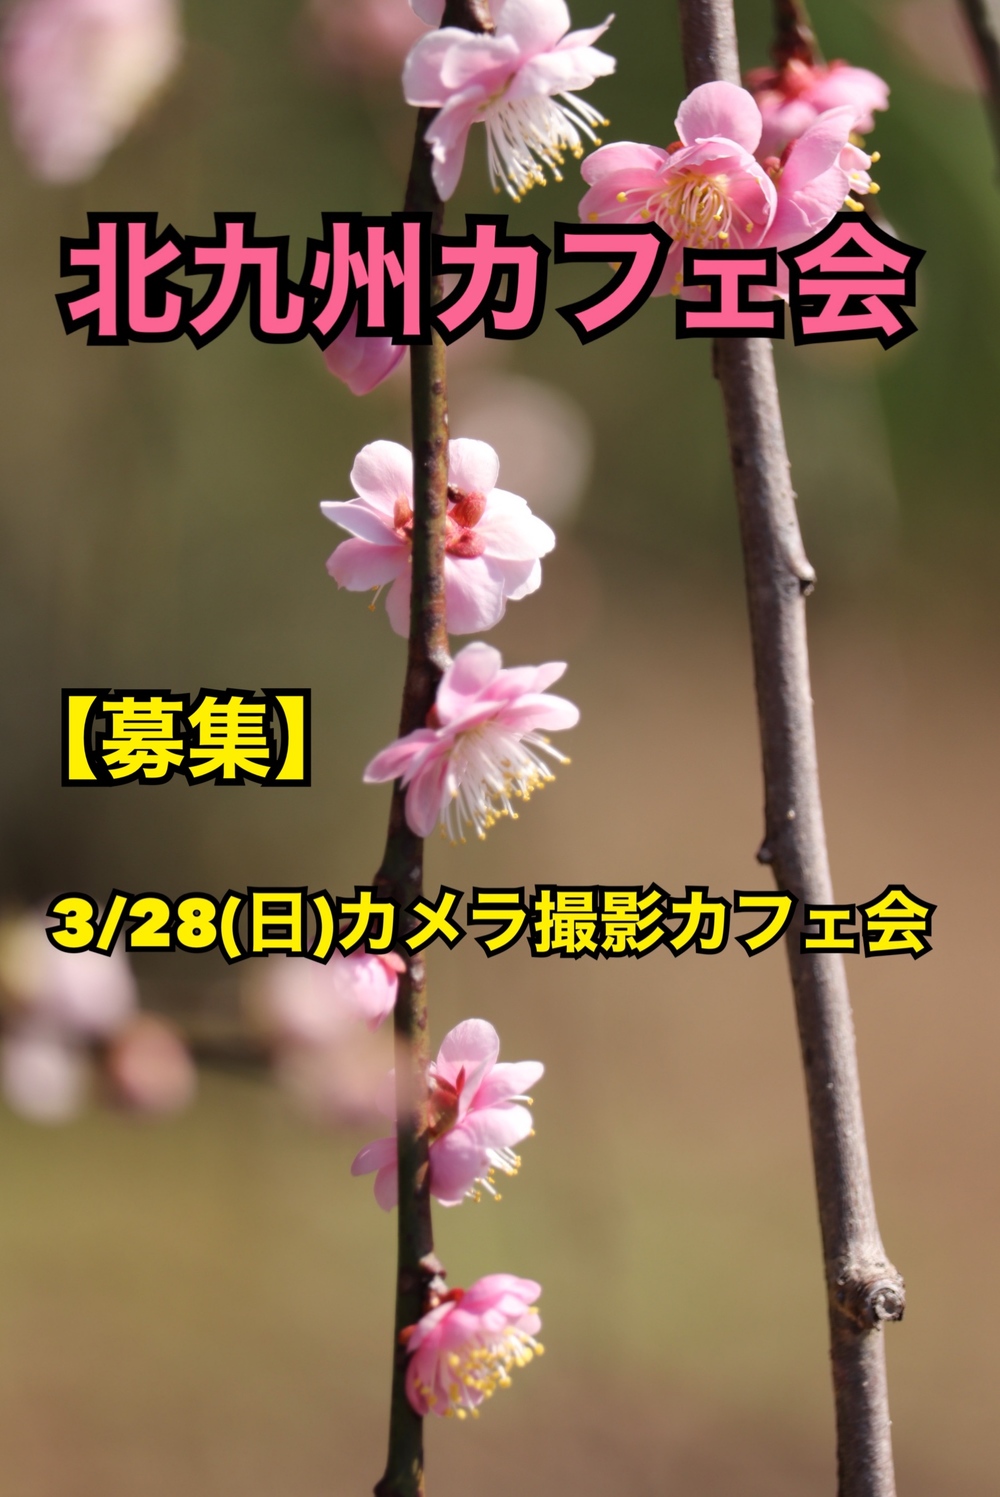 【募集】3/28(日)カメラ撮影カフェ会〜到津の森公園